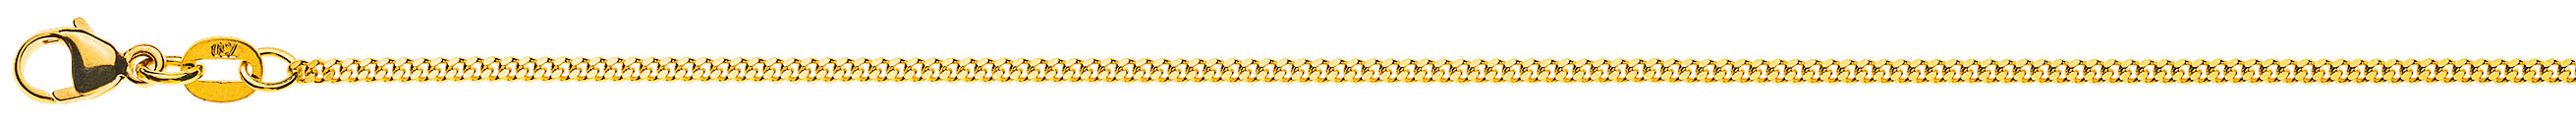 AURONOS Prestige Halskette Gelbgold 18K Panzerkette geschliffen 60cm 1.6mm